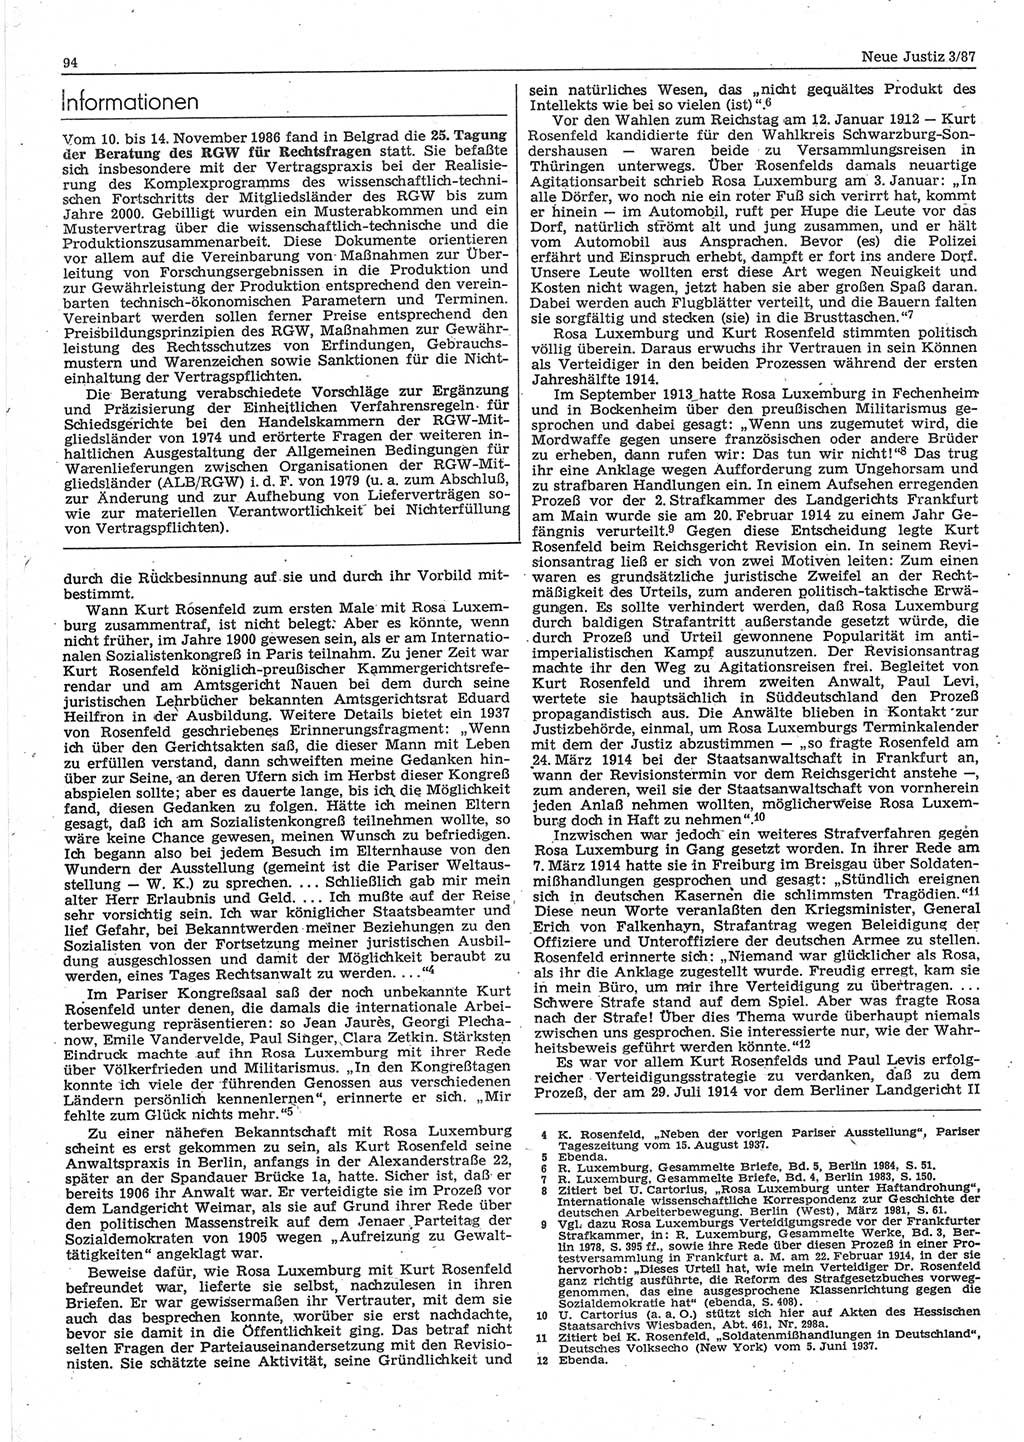 Neue Justiz (NJ), Zeitschrift für sozialistisches Recht und Gesetzlichkeit [Deutsche Demokratische Republik (DDR)], 41. Jahrgang 1987, Seite 94 (NJ DDR 1987, S. 94)